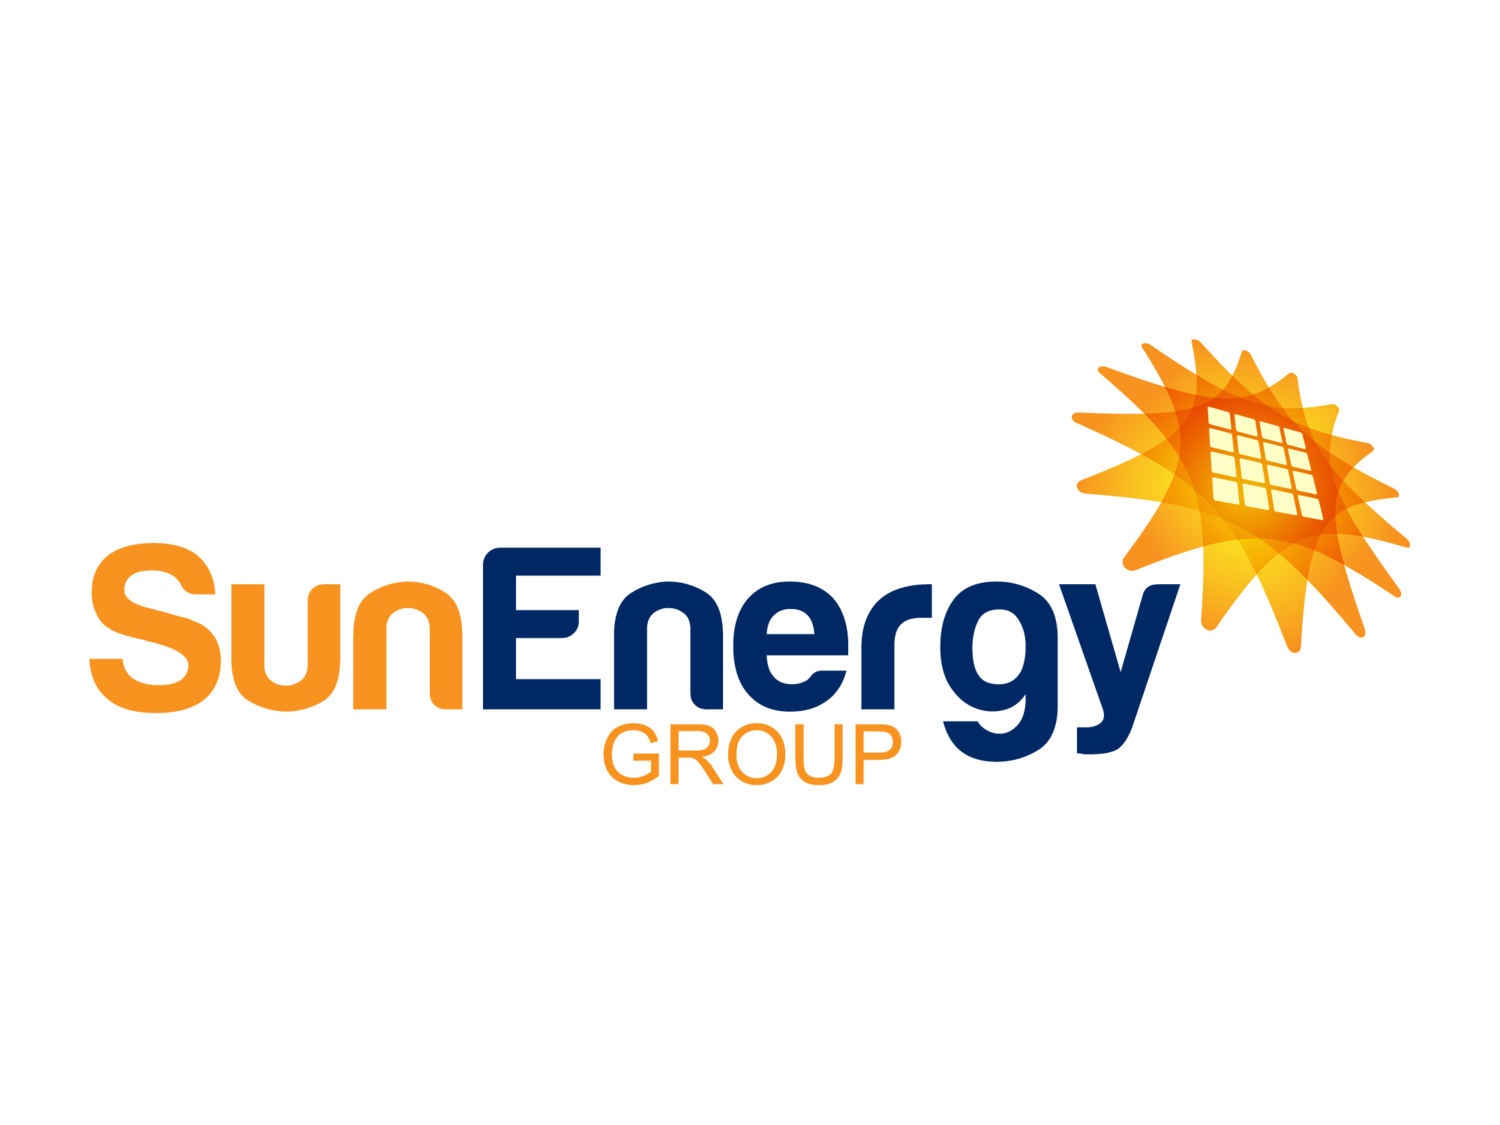 The Sun Energy Group